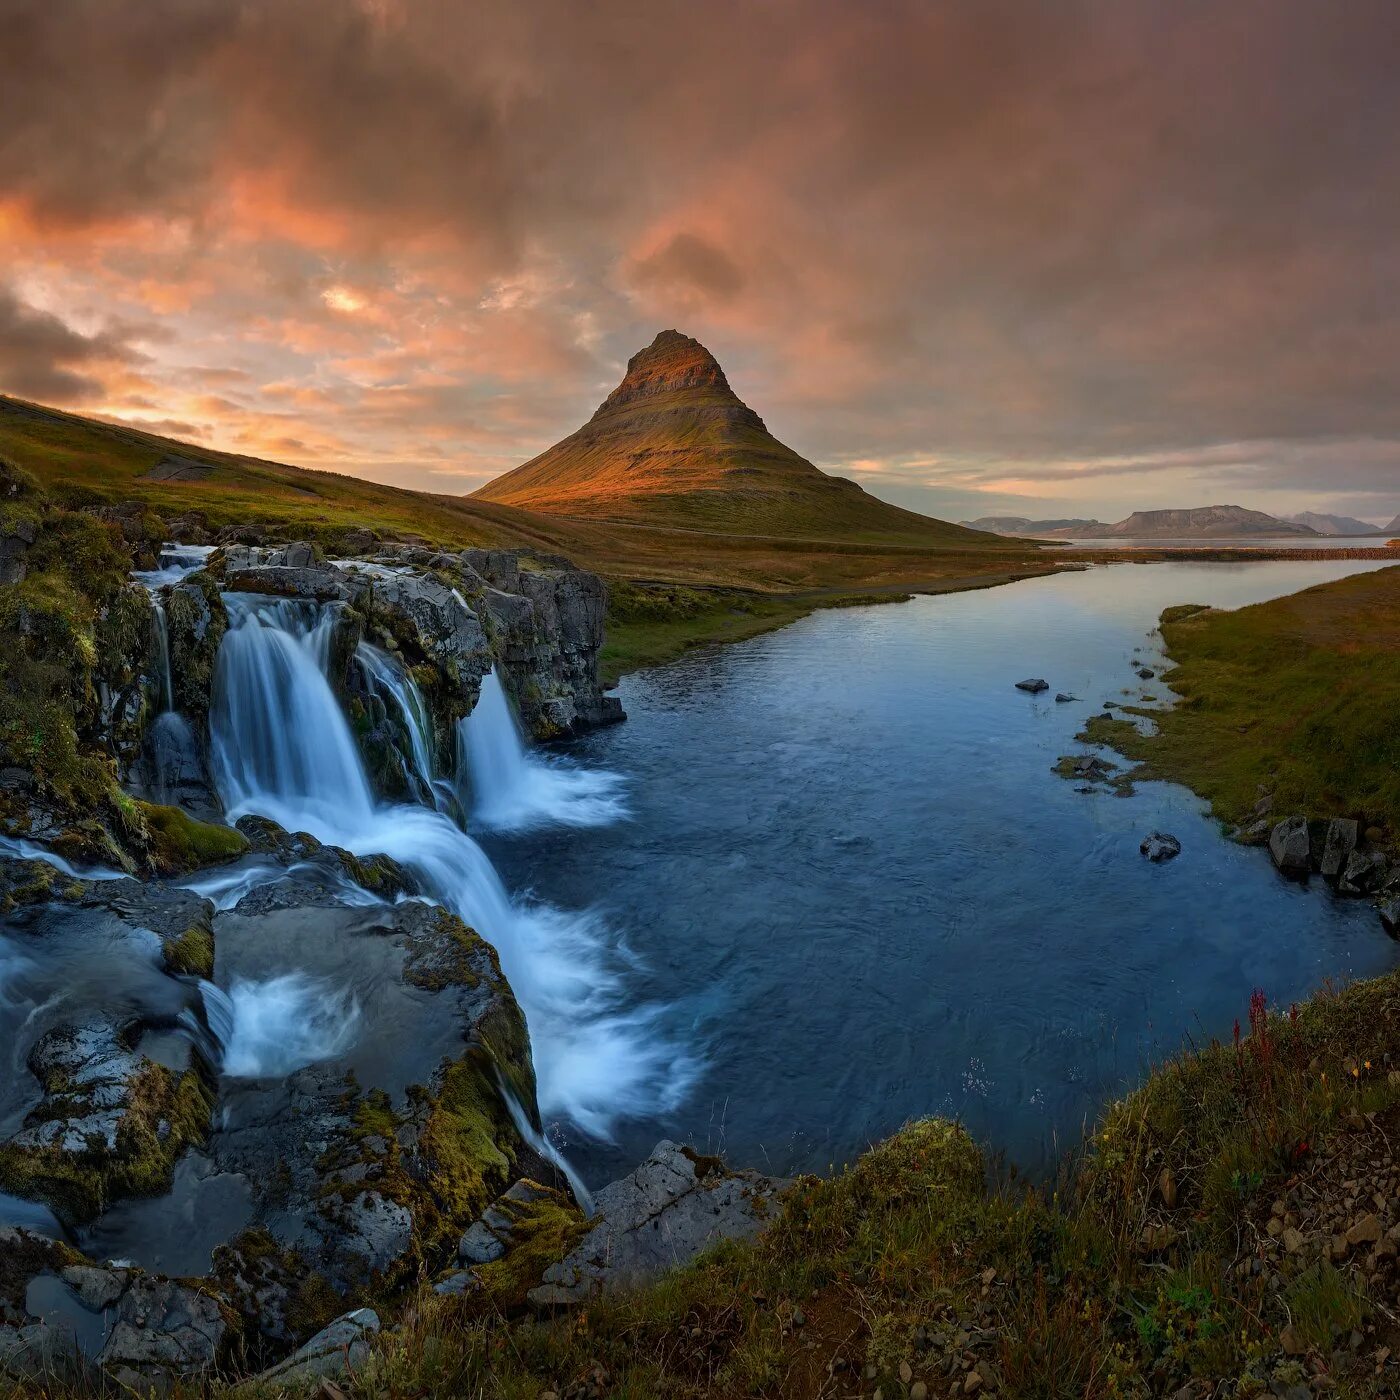 Киркьюфетль, Исландия. Гора Киркьюфетль. Исландия пейзажи. Природа Исландии. Discover nature